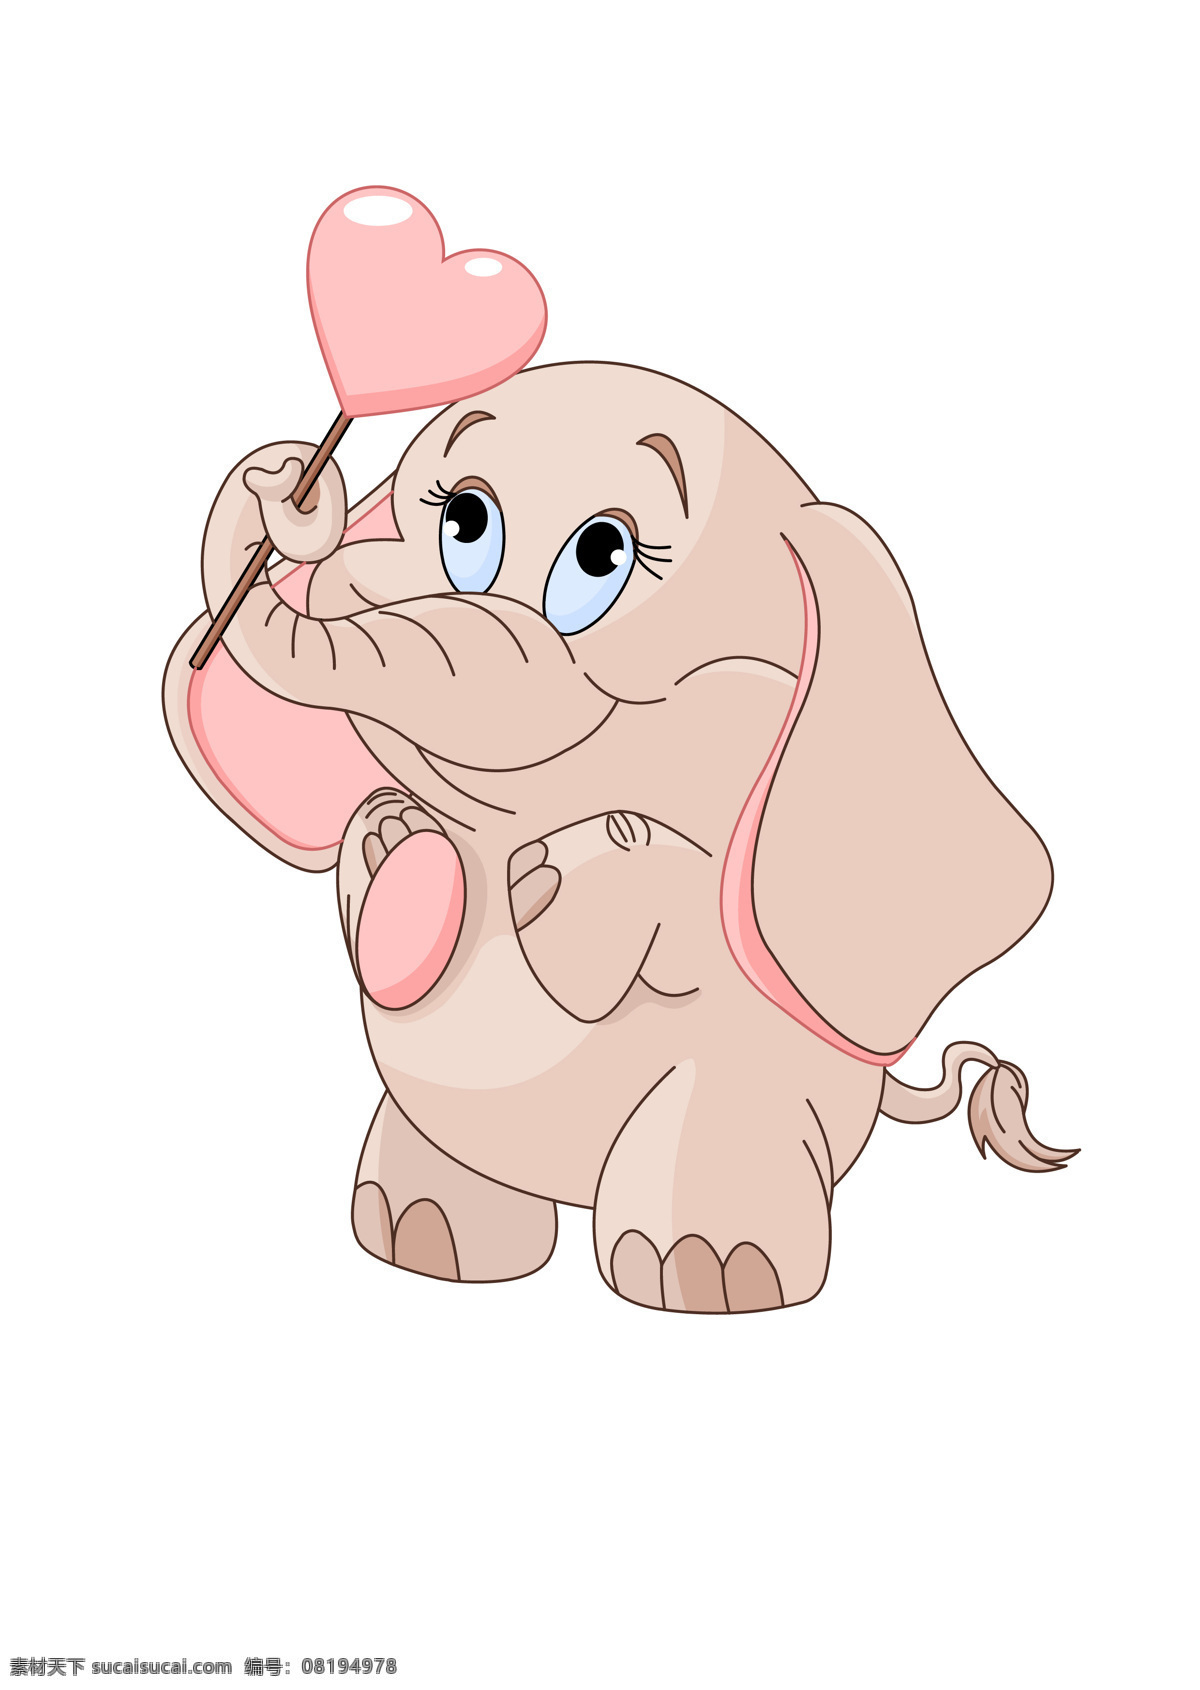 可爱 心形 卡通 小象 动画卡通 动物插画 卡通动物 卡通图 卡通小象 可爱可通动物 动漫